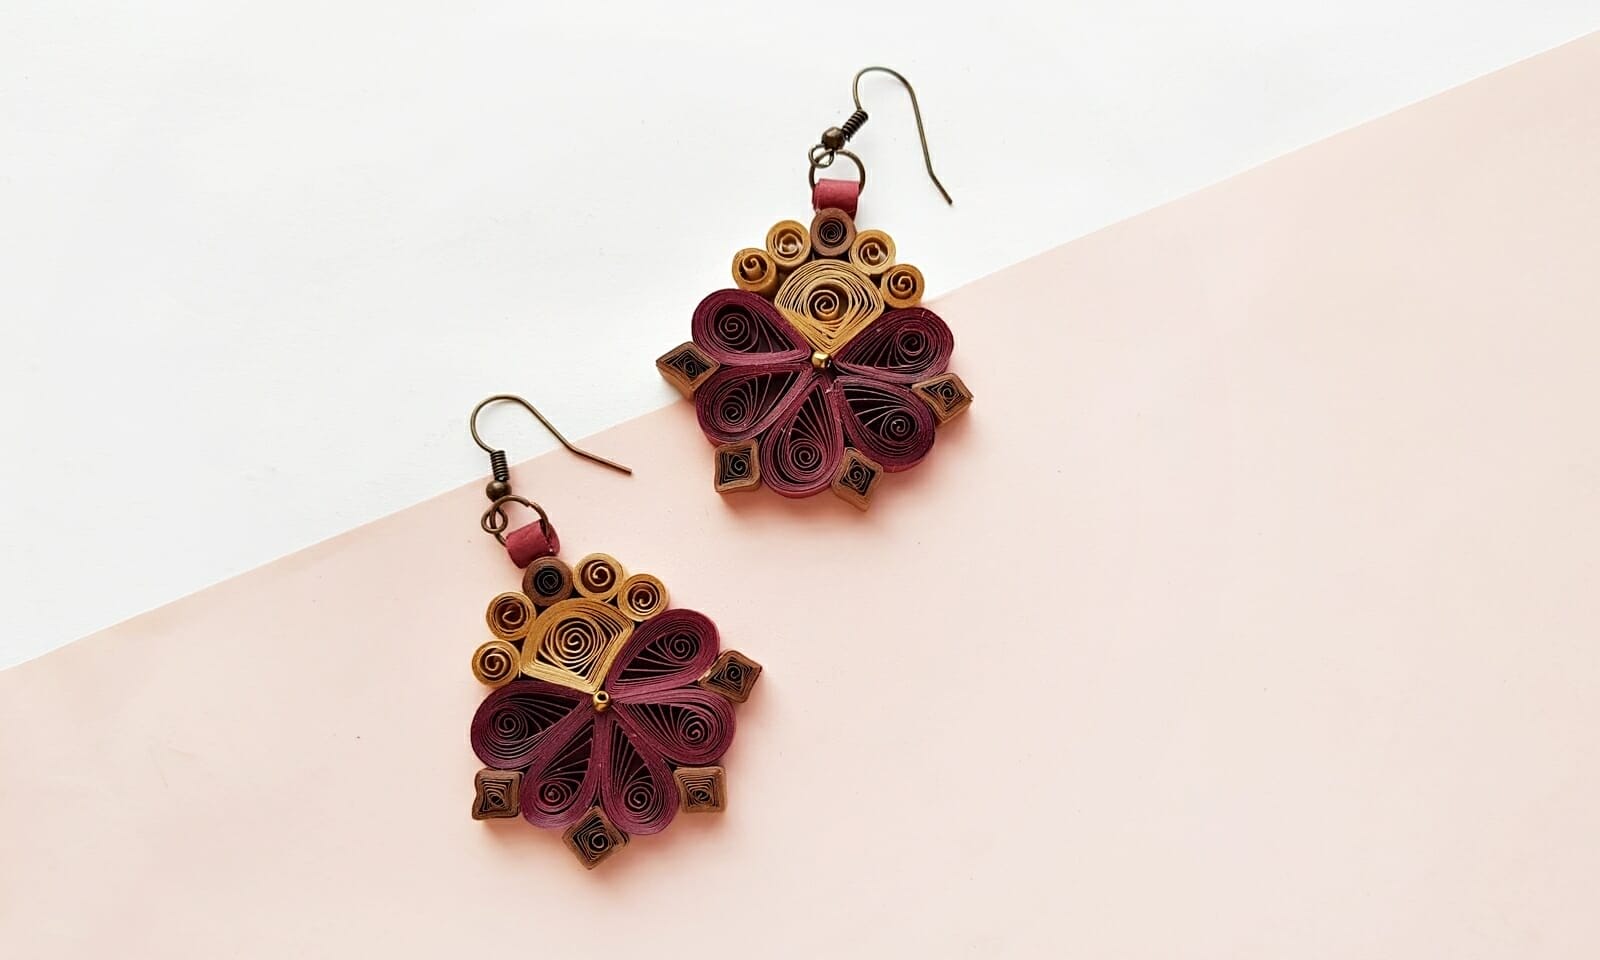 Quilling paper earrings making rose flower design earrings making methods -  YouTube